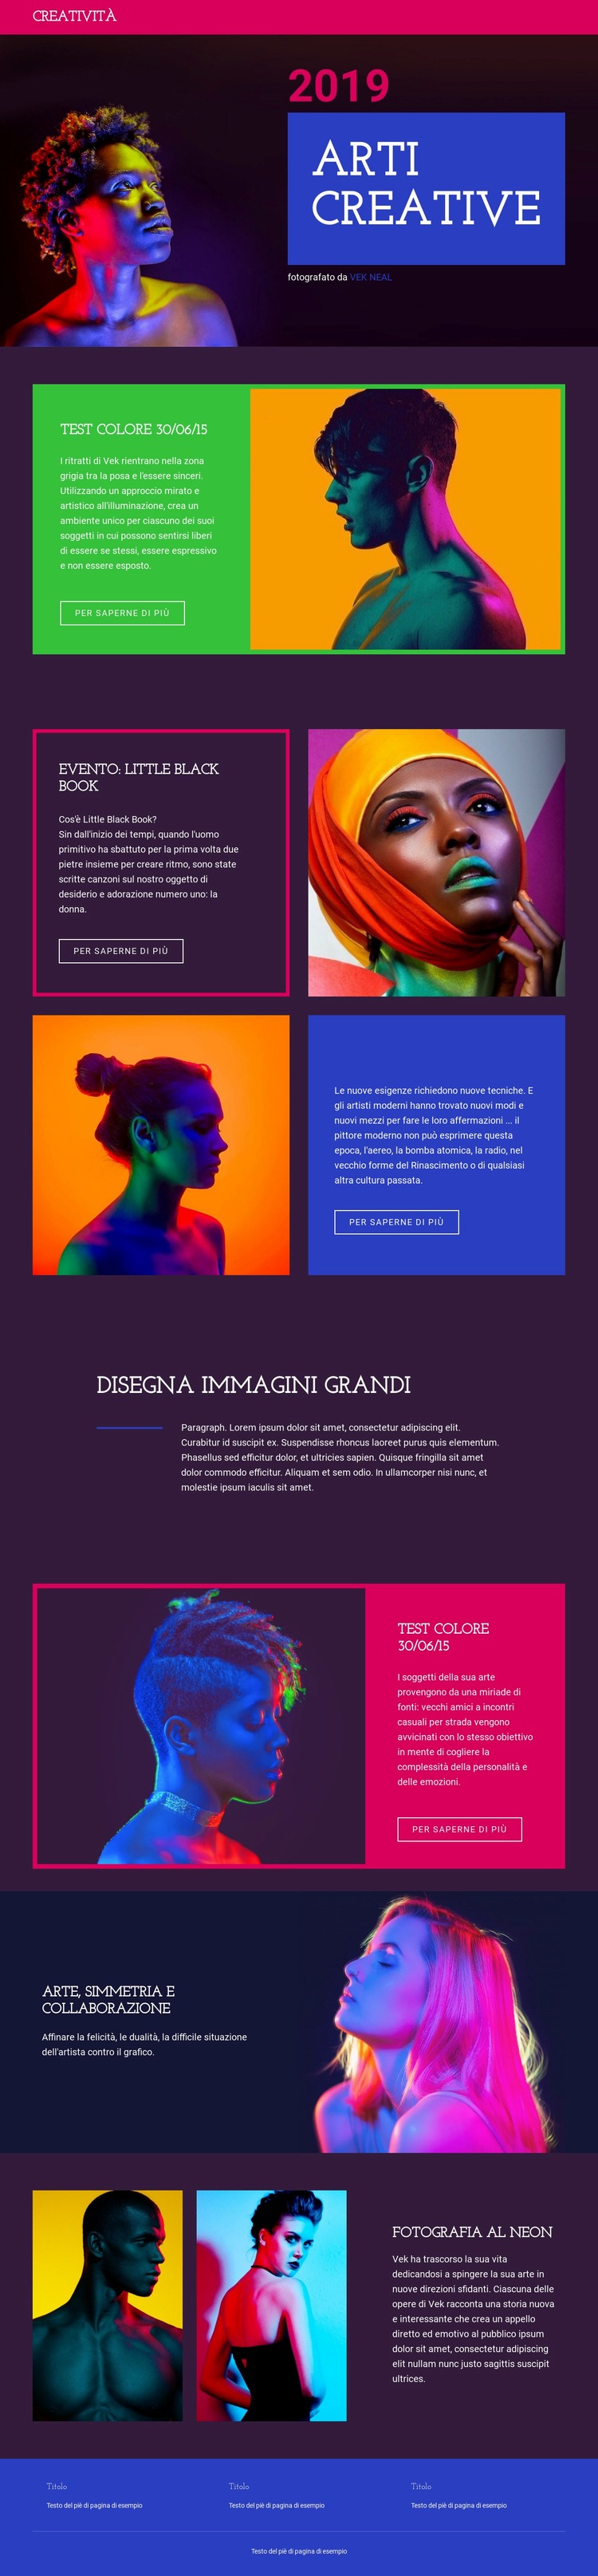 Design e arte raffinati Costruttore di siti web HTML